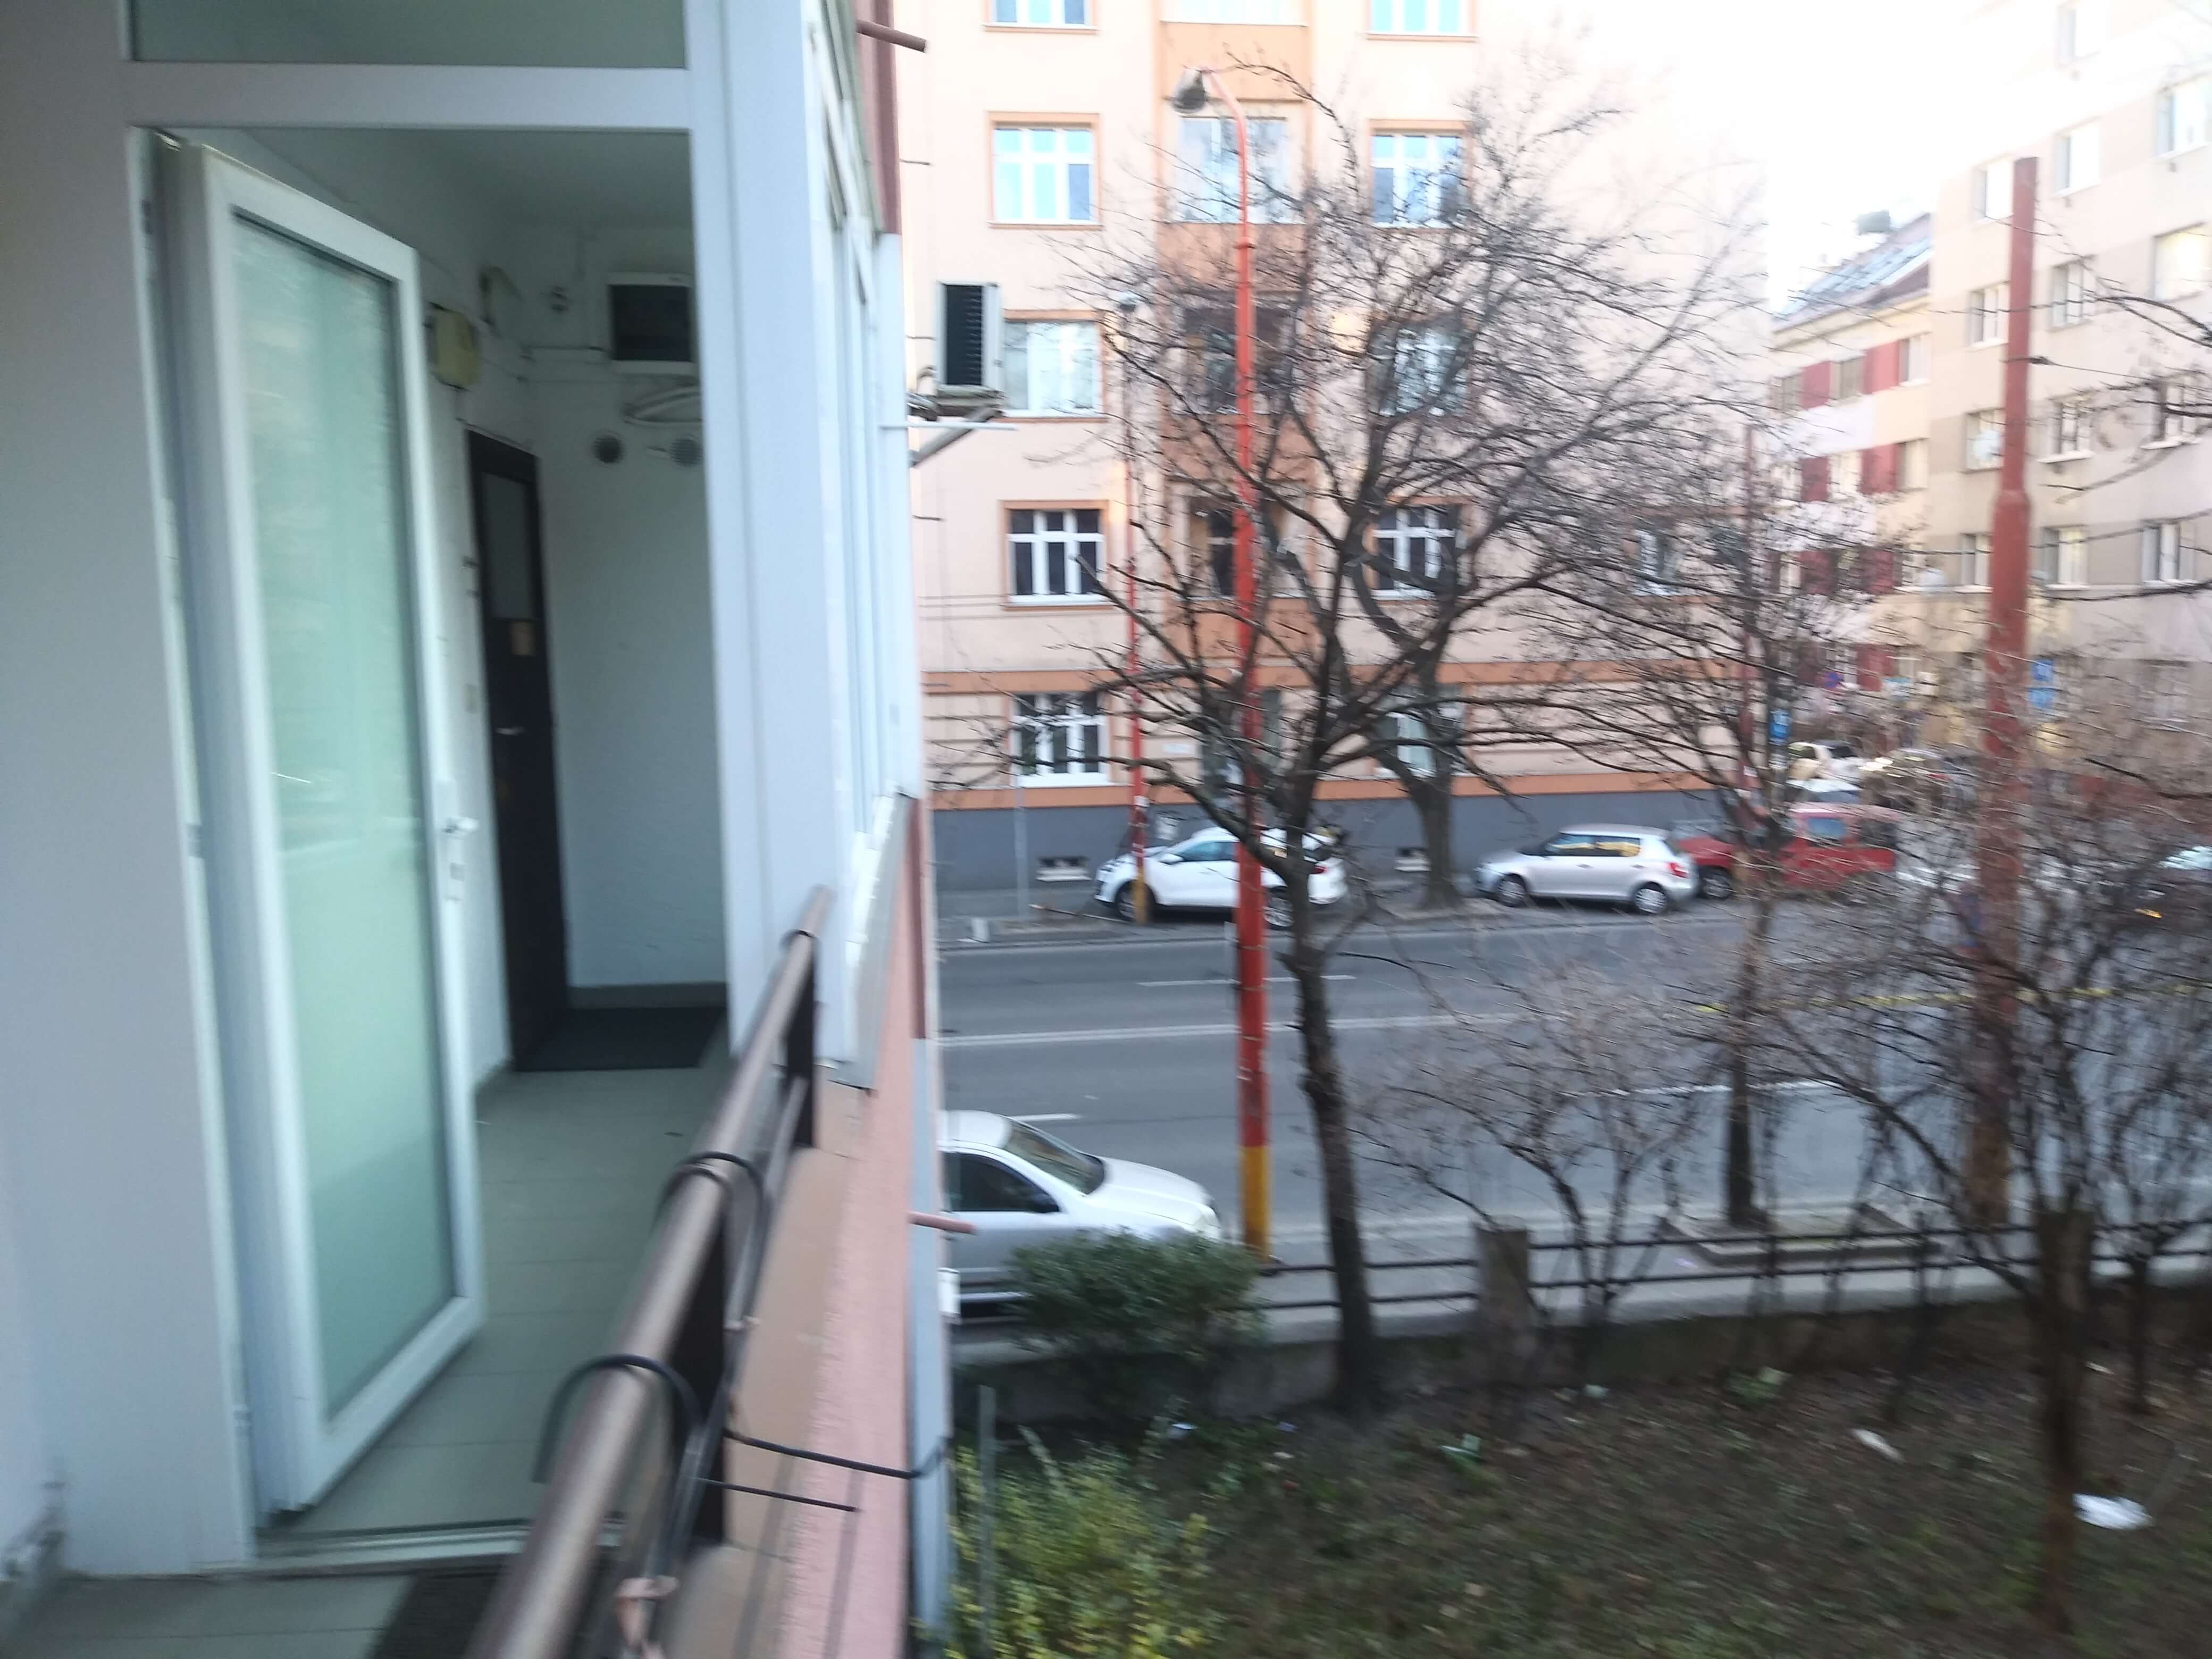 Prenajaté: Prenájom veľkého 2 izbového bytu 80m2, staré mesto, Šancová ulica 37, Bratislava, zariadený-3